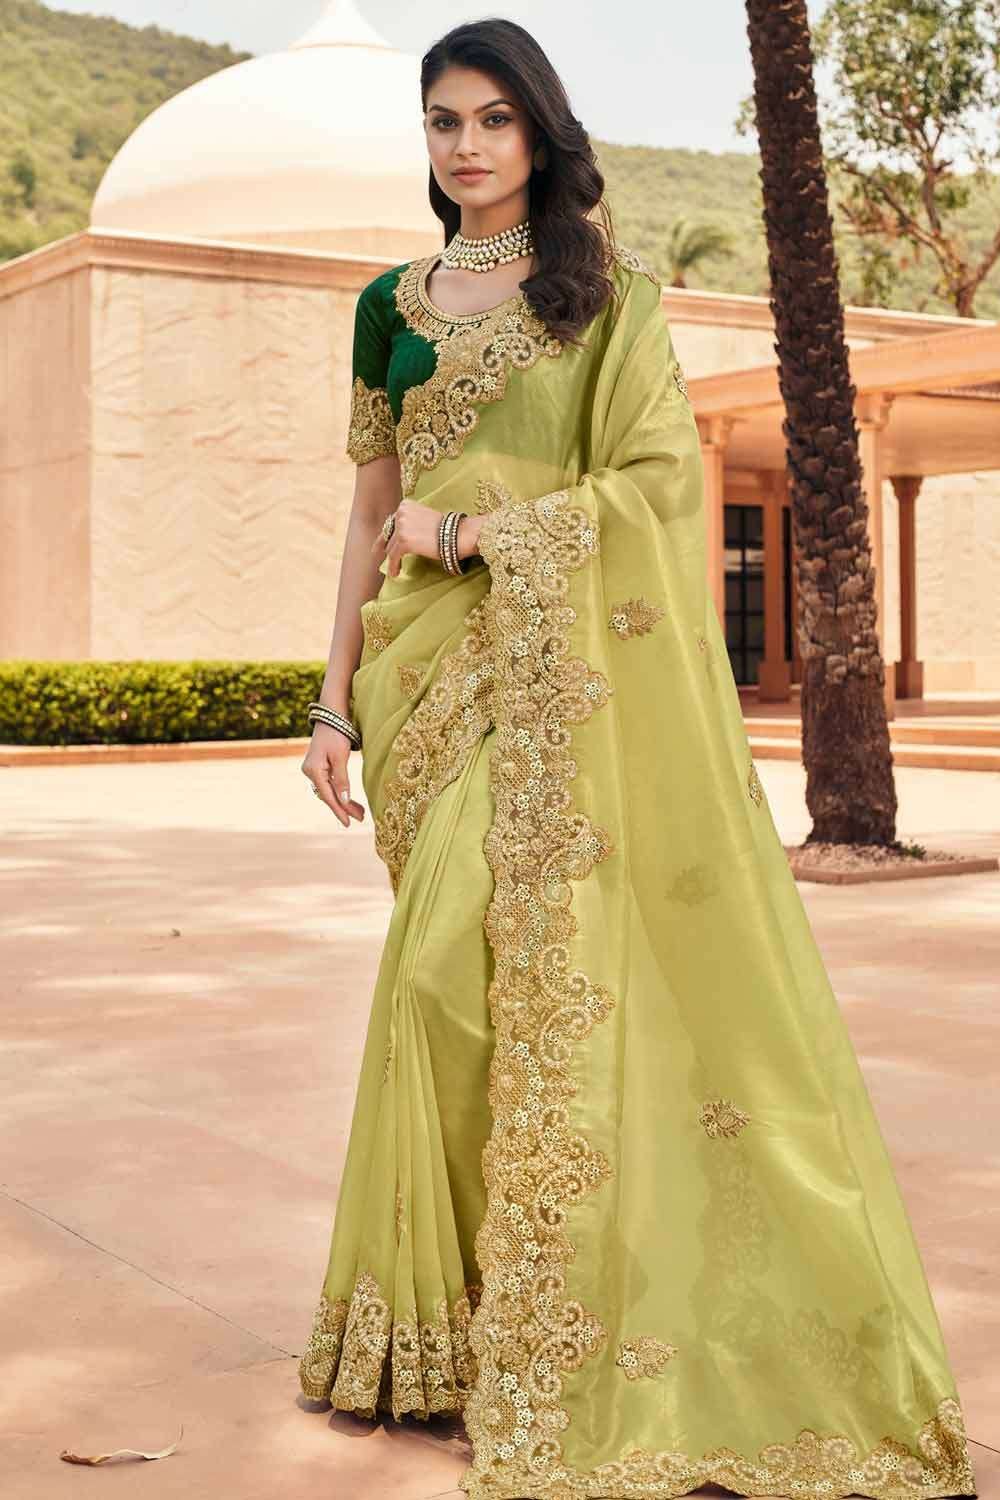 Green Silk Saree Matching Blouse | new saree kuchu design photos